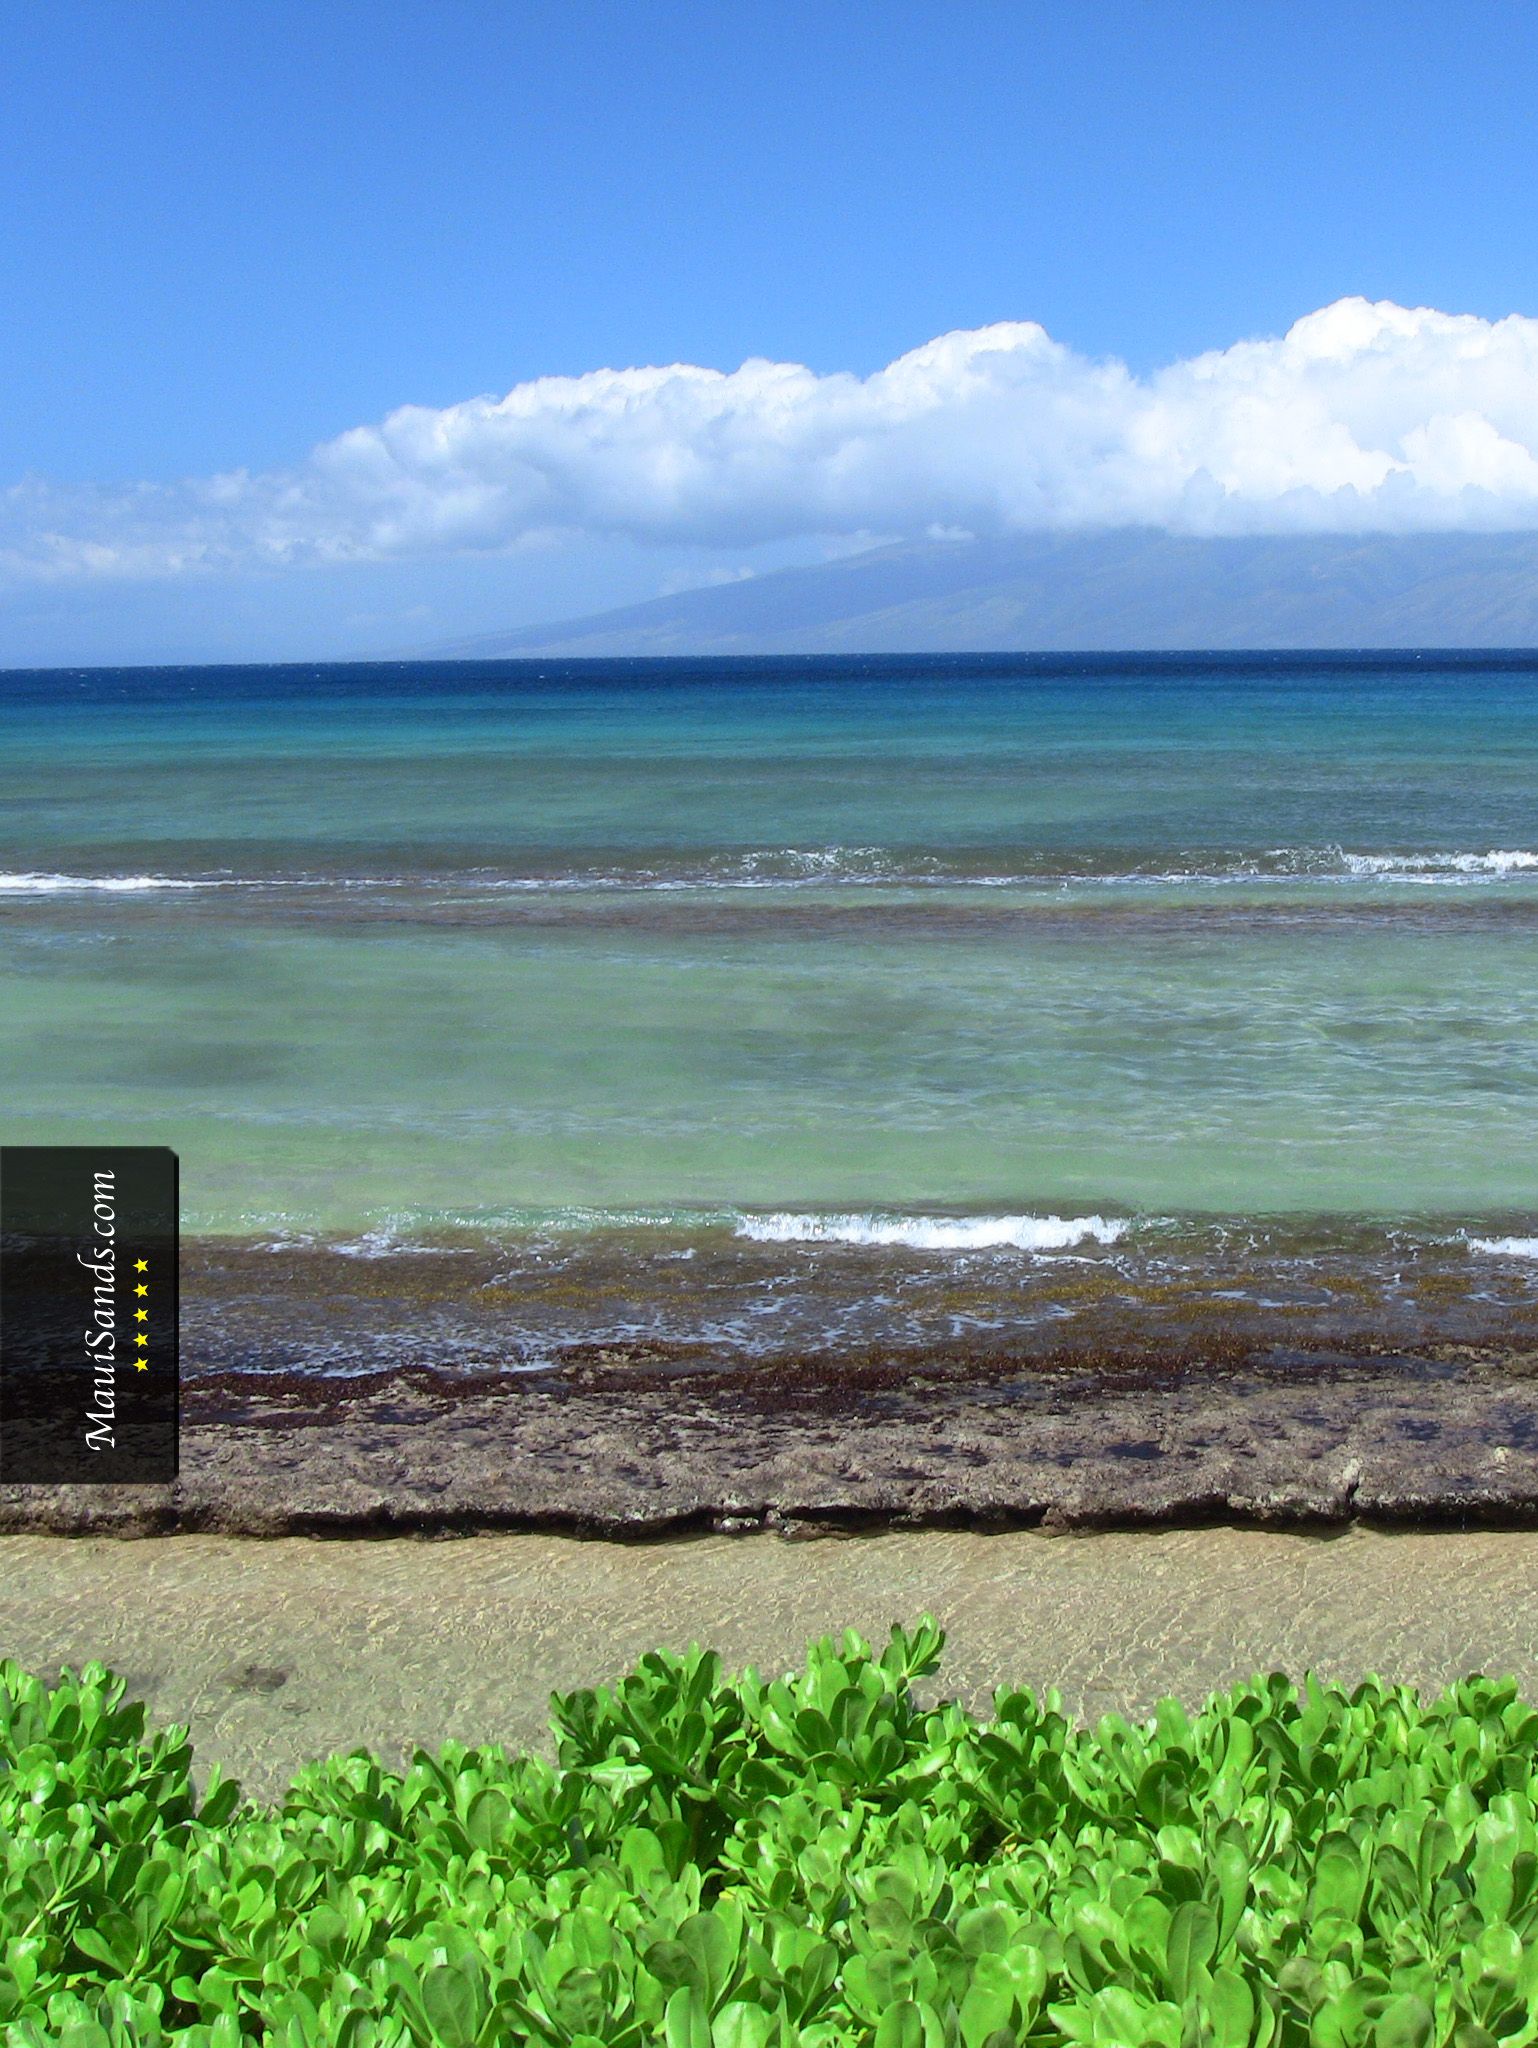 Fondos de Hawaii de Maui Sands